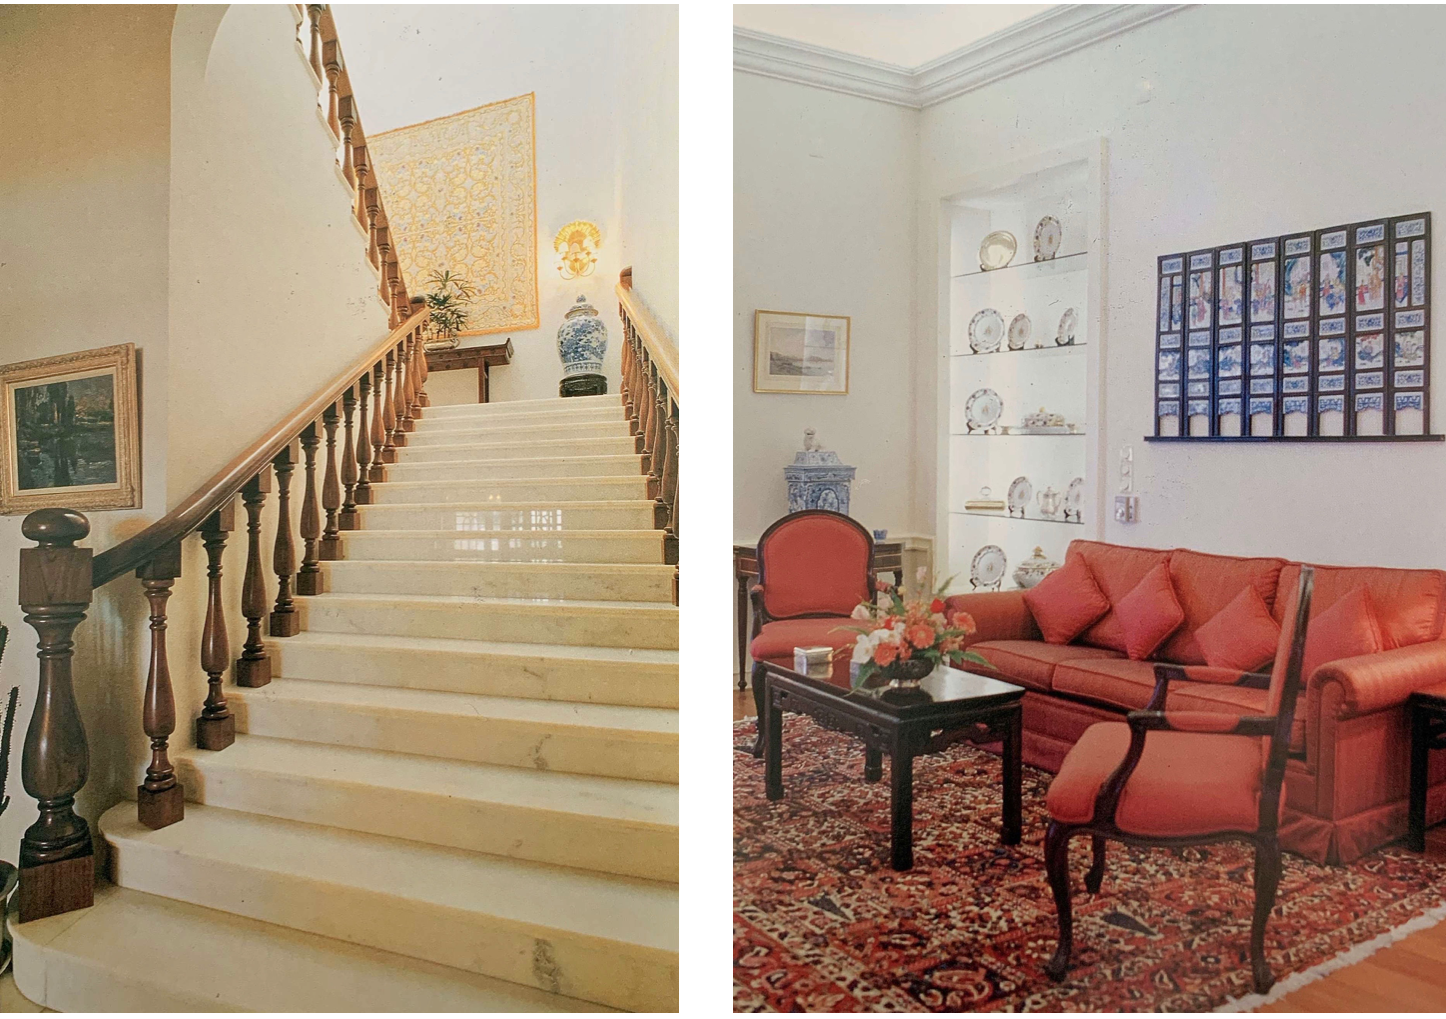 Santa Sancha Interior Staircase and Living Room Details Credits Santa Sancha ICM Book